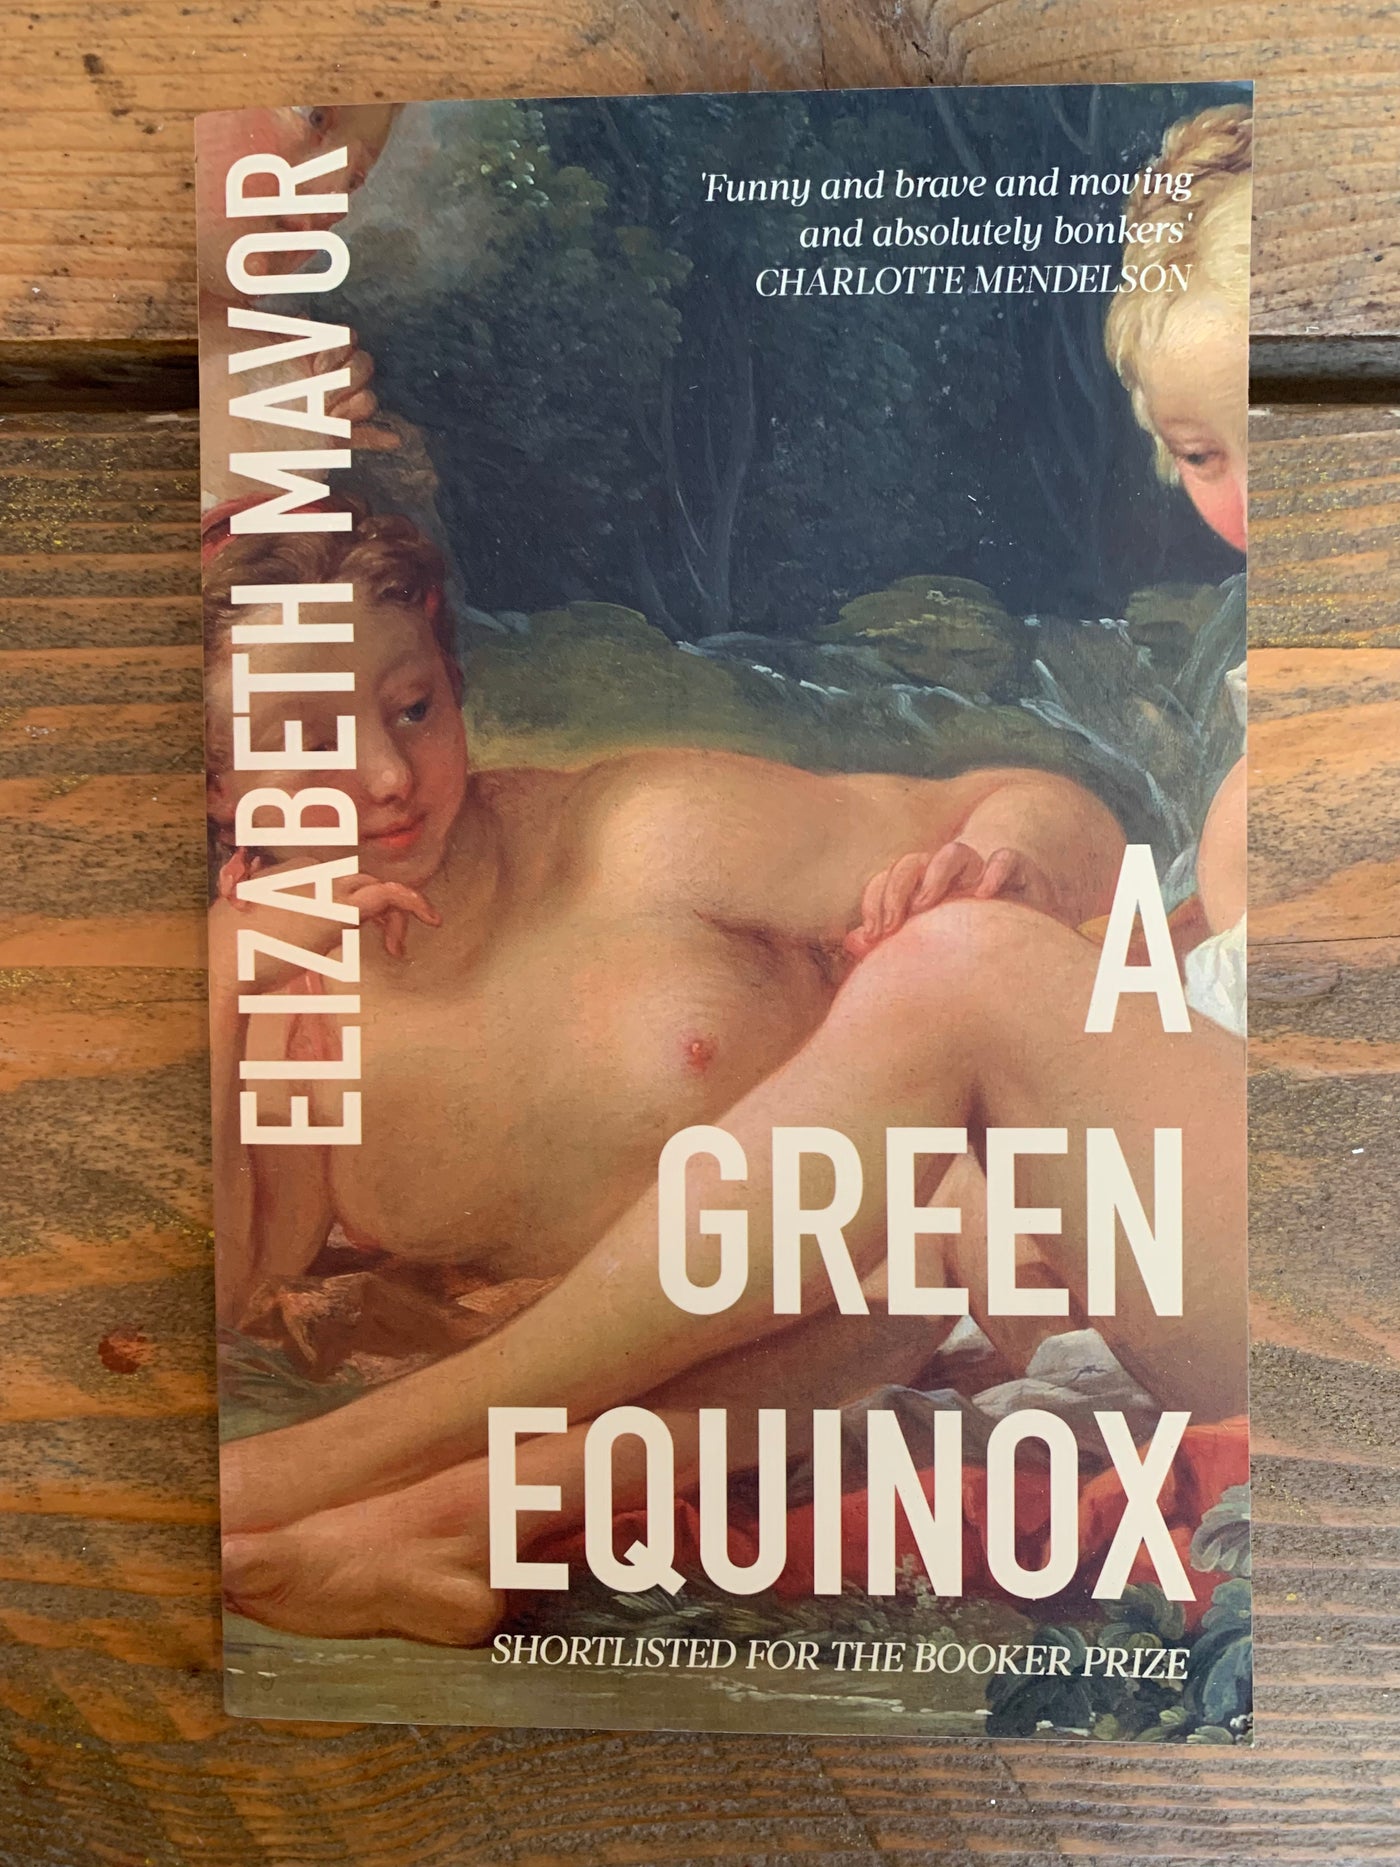 A Green Equinox